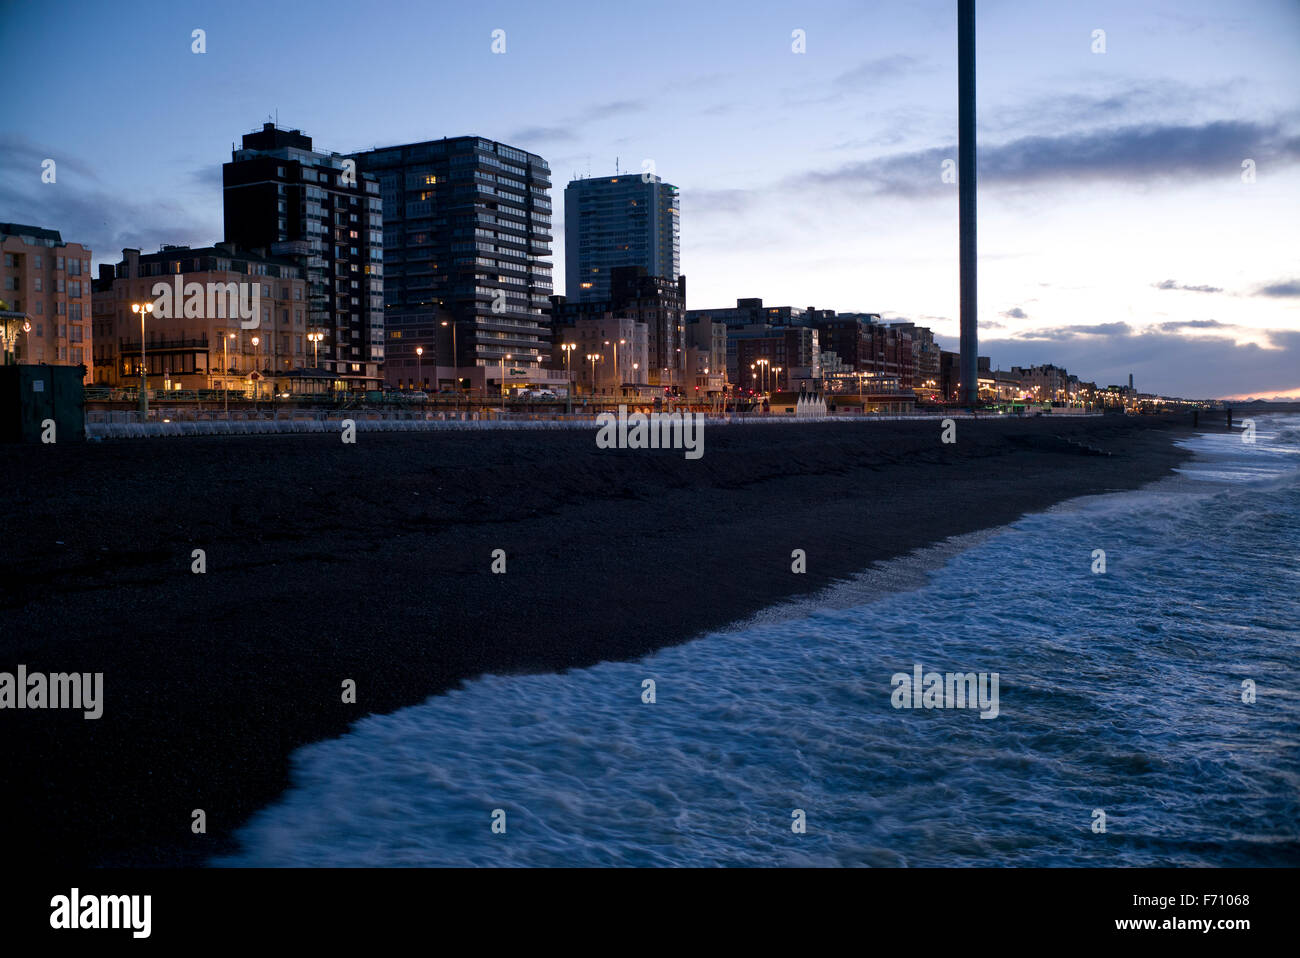 Front de mer de Brighton et hôtels, avant le lever du soleil, des lampadaires et tour d'observation i360 Banque D'Images